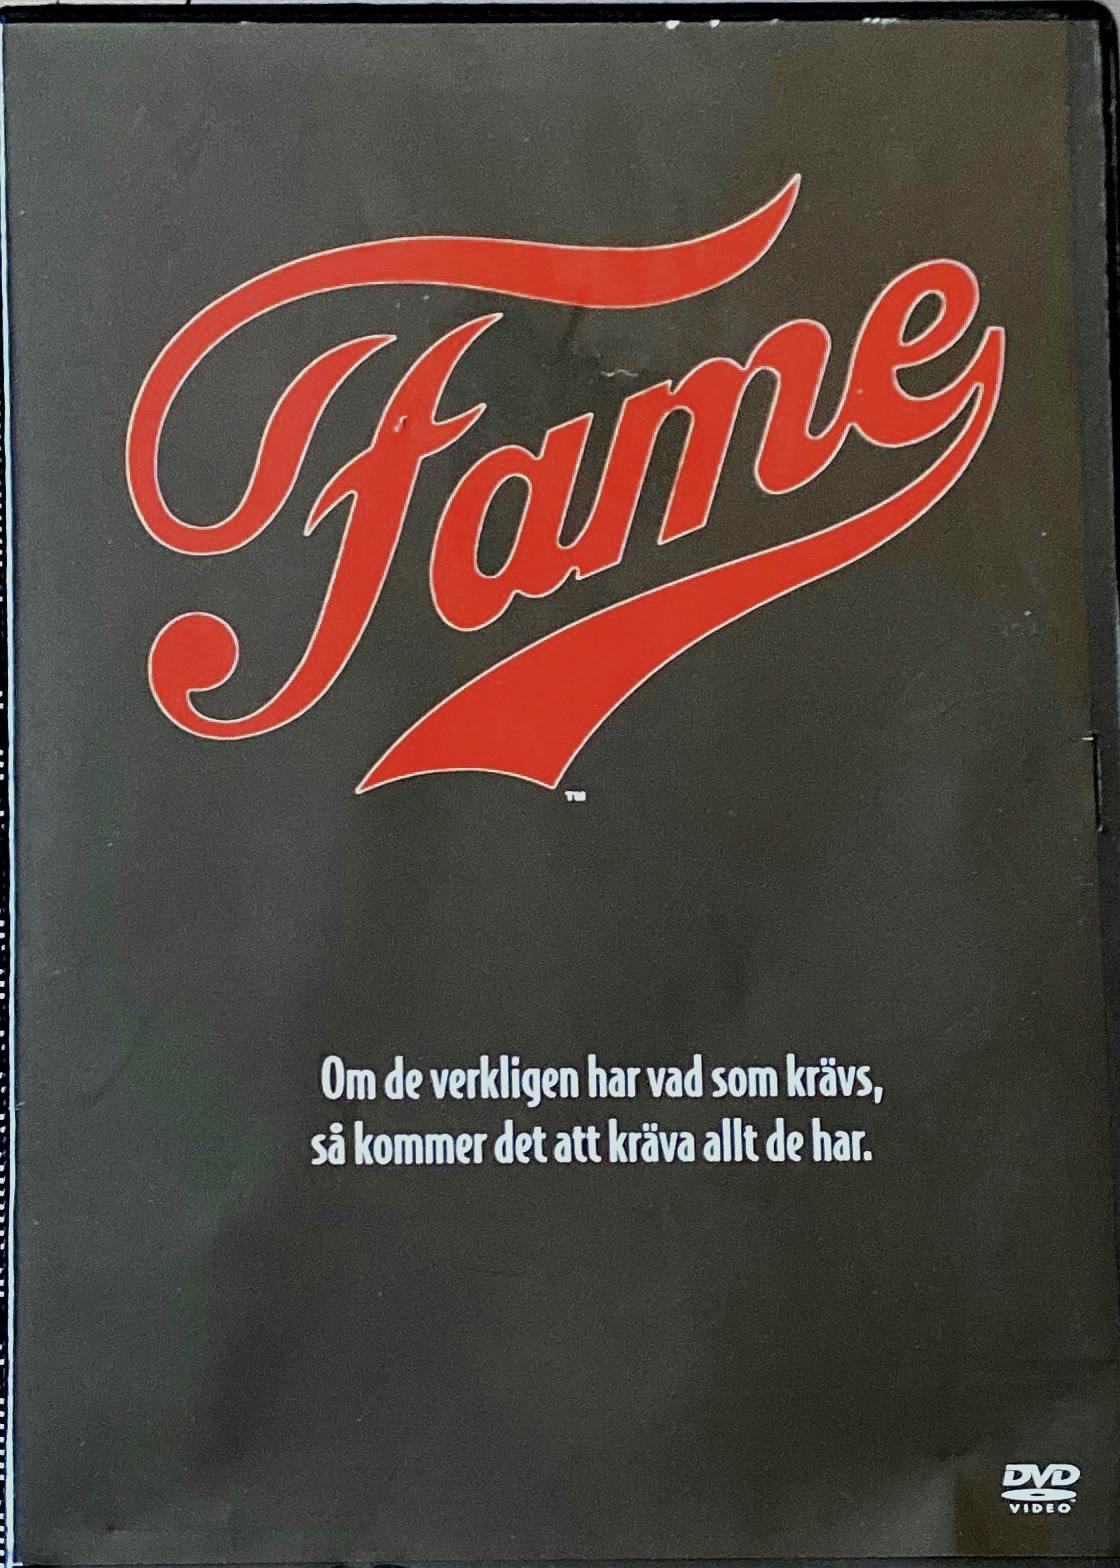 Fame (DVD)